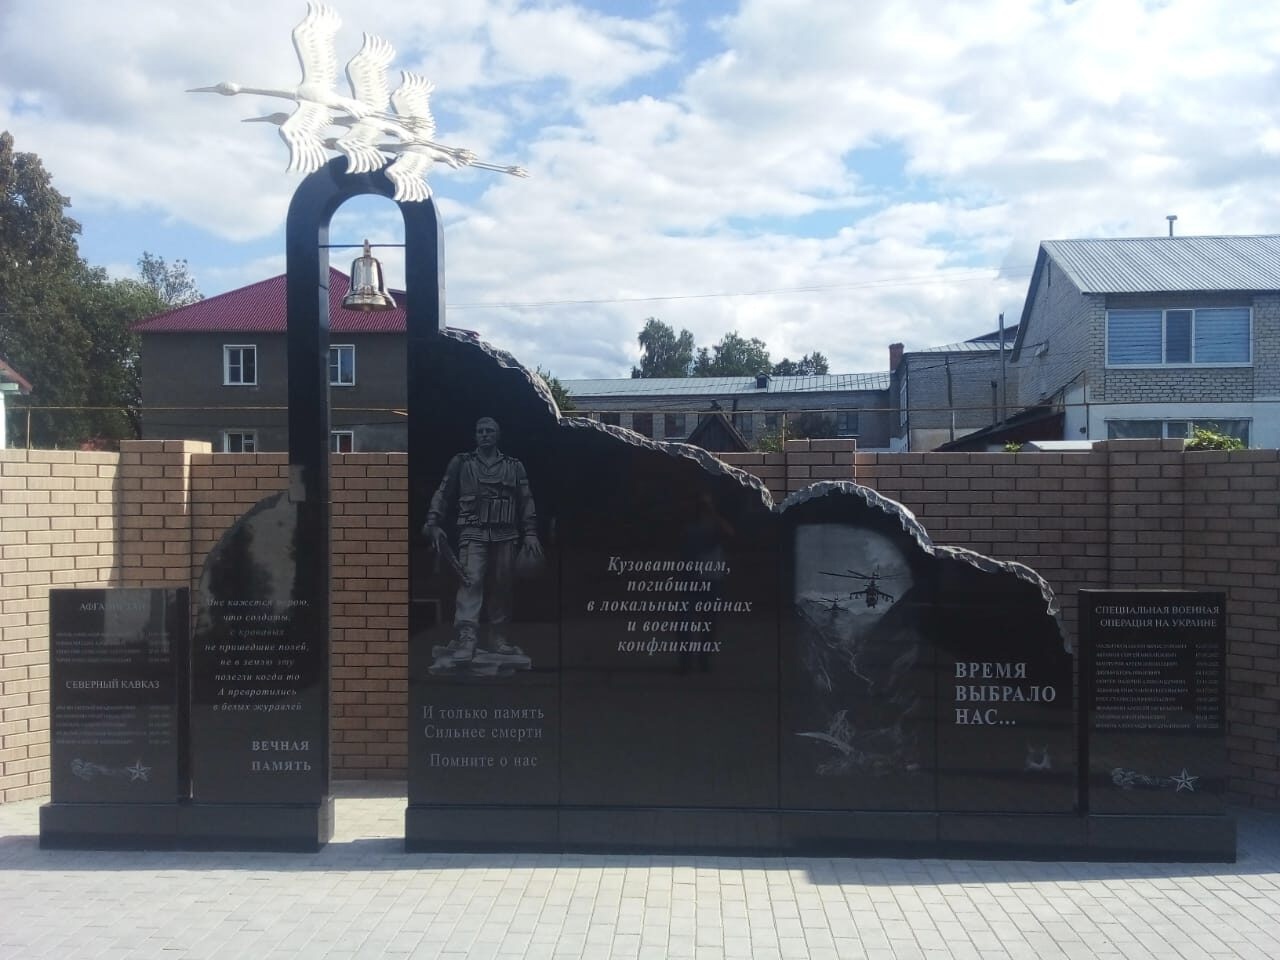 В р.п. Кузоватово установлен памятник мемориал памяти кузоватовцам погибшим в Афганистане, Чечне, Дагестане и во время специальной военной операции.